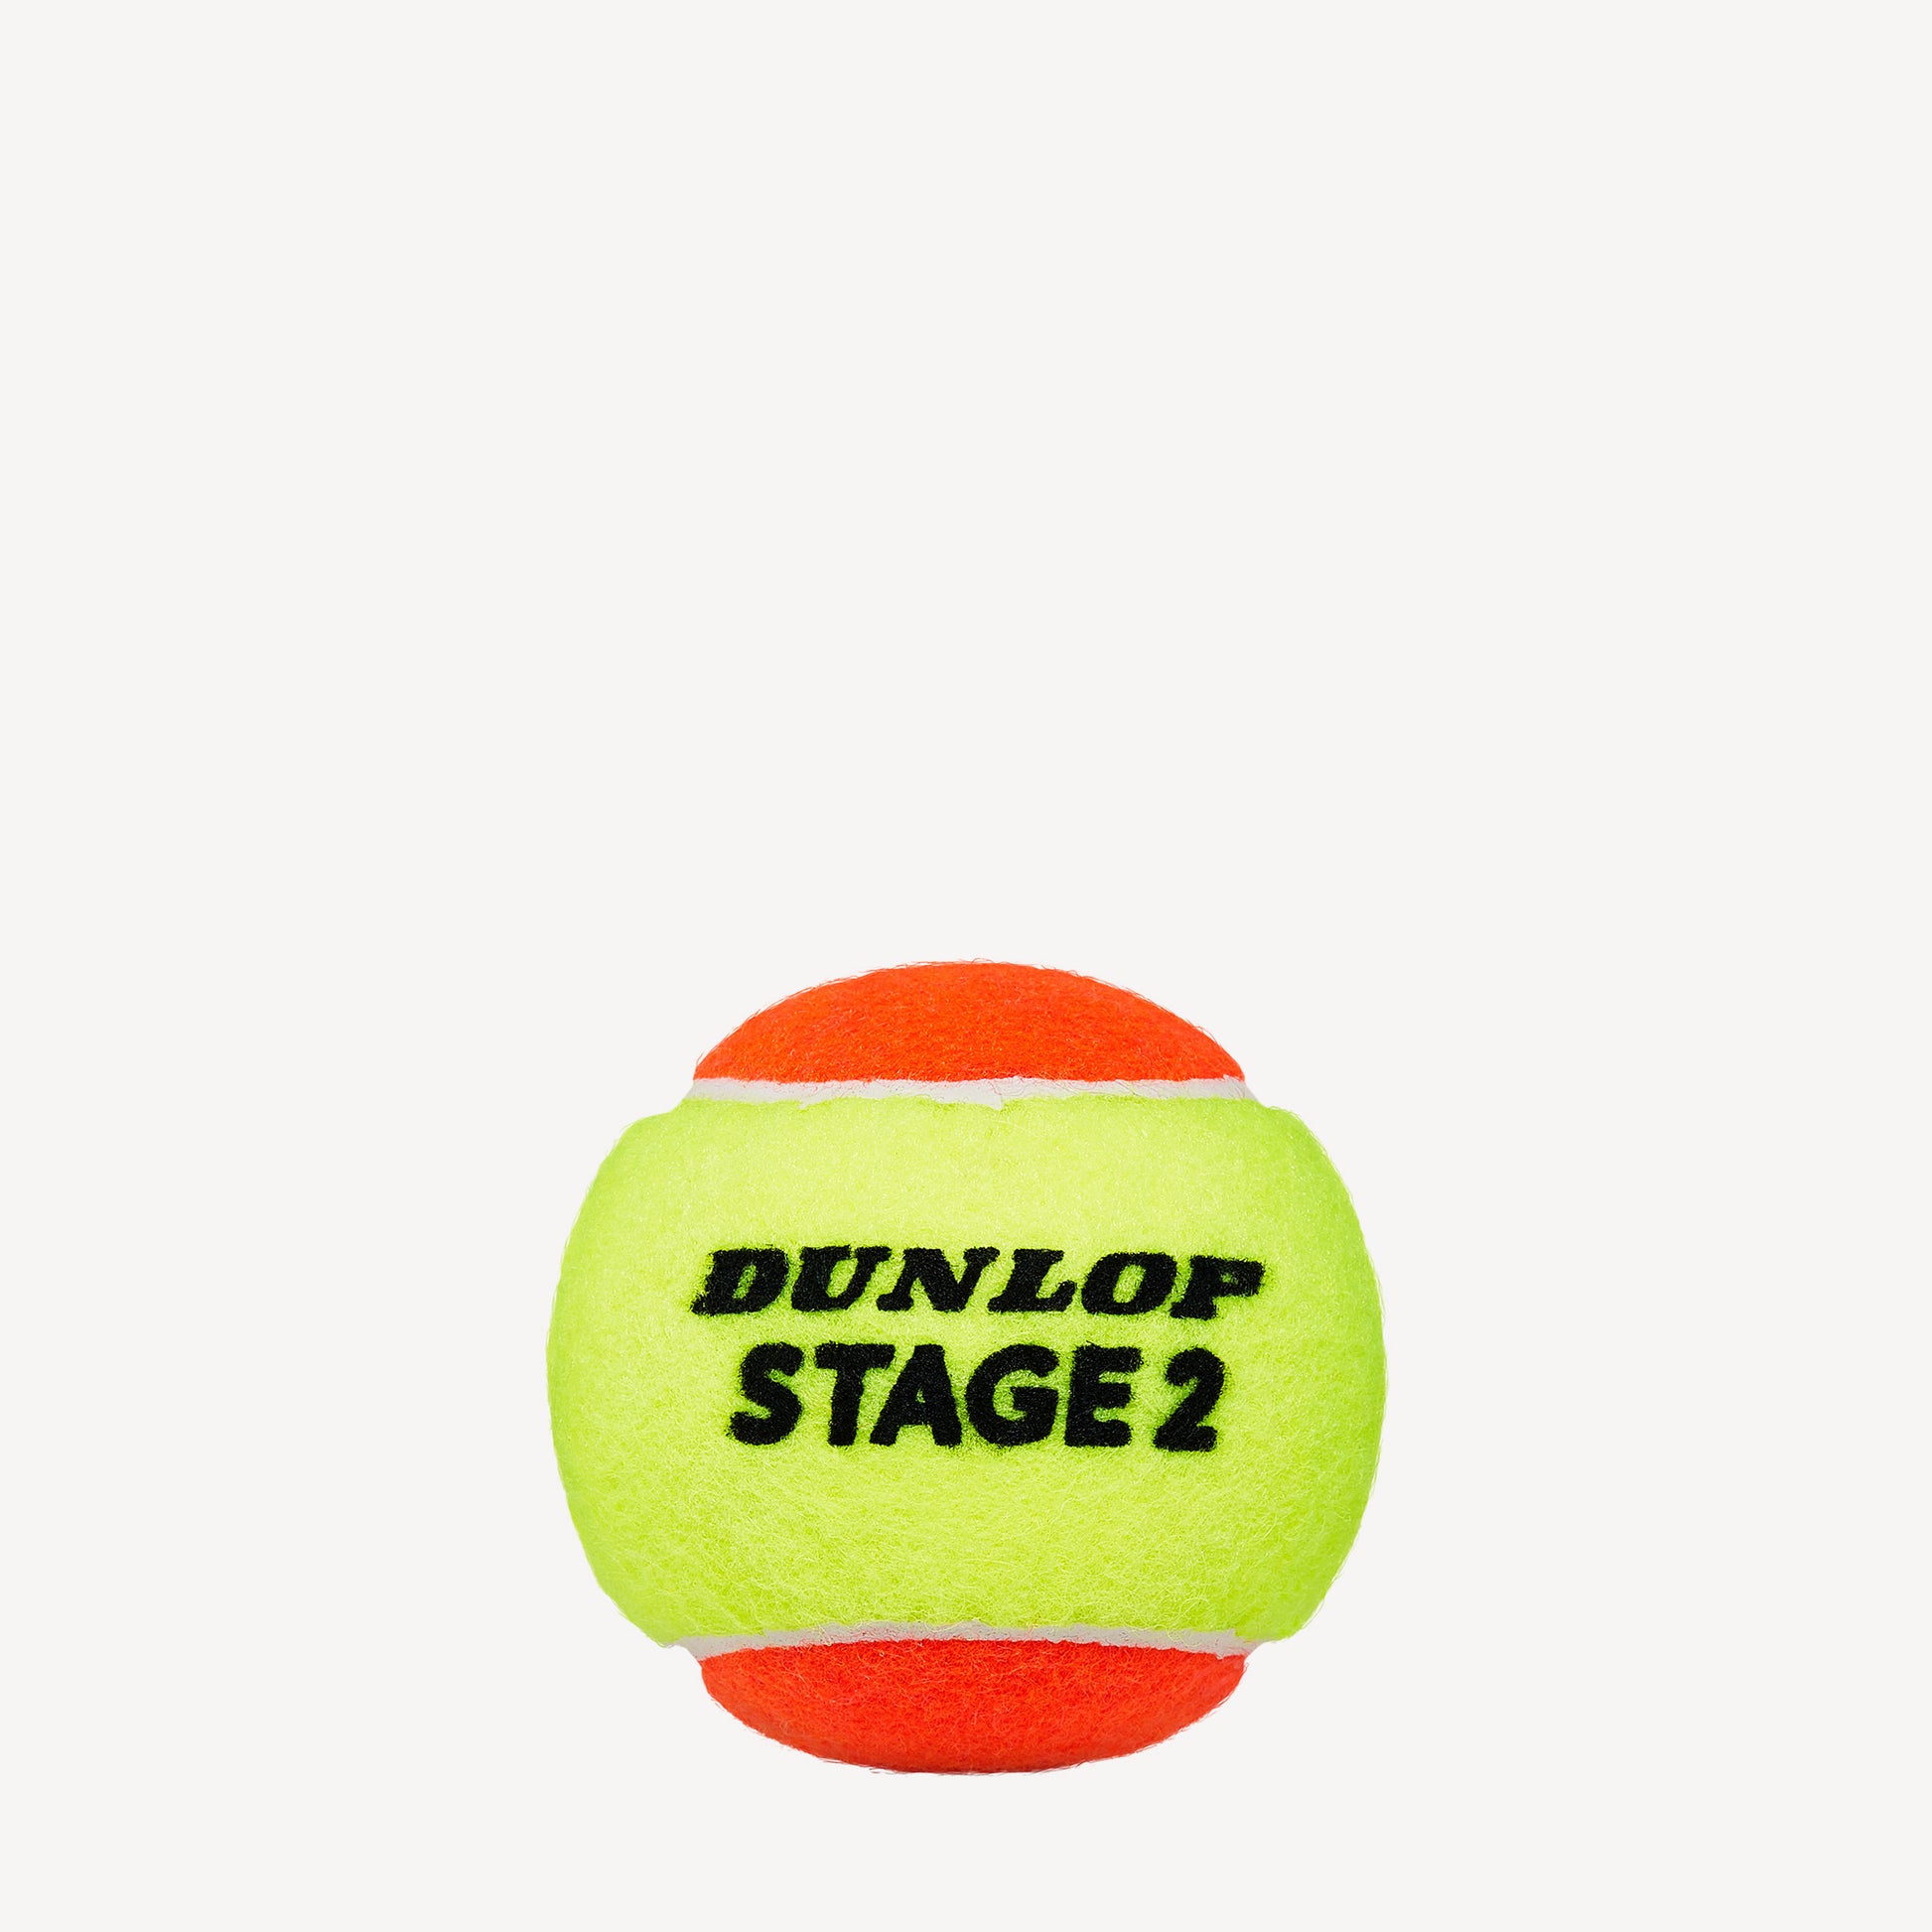 Dunlop Stage 2 Orange 3 Tennis Balls 2